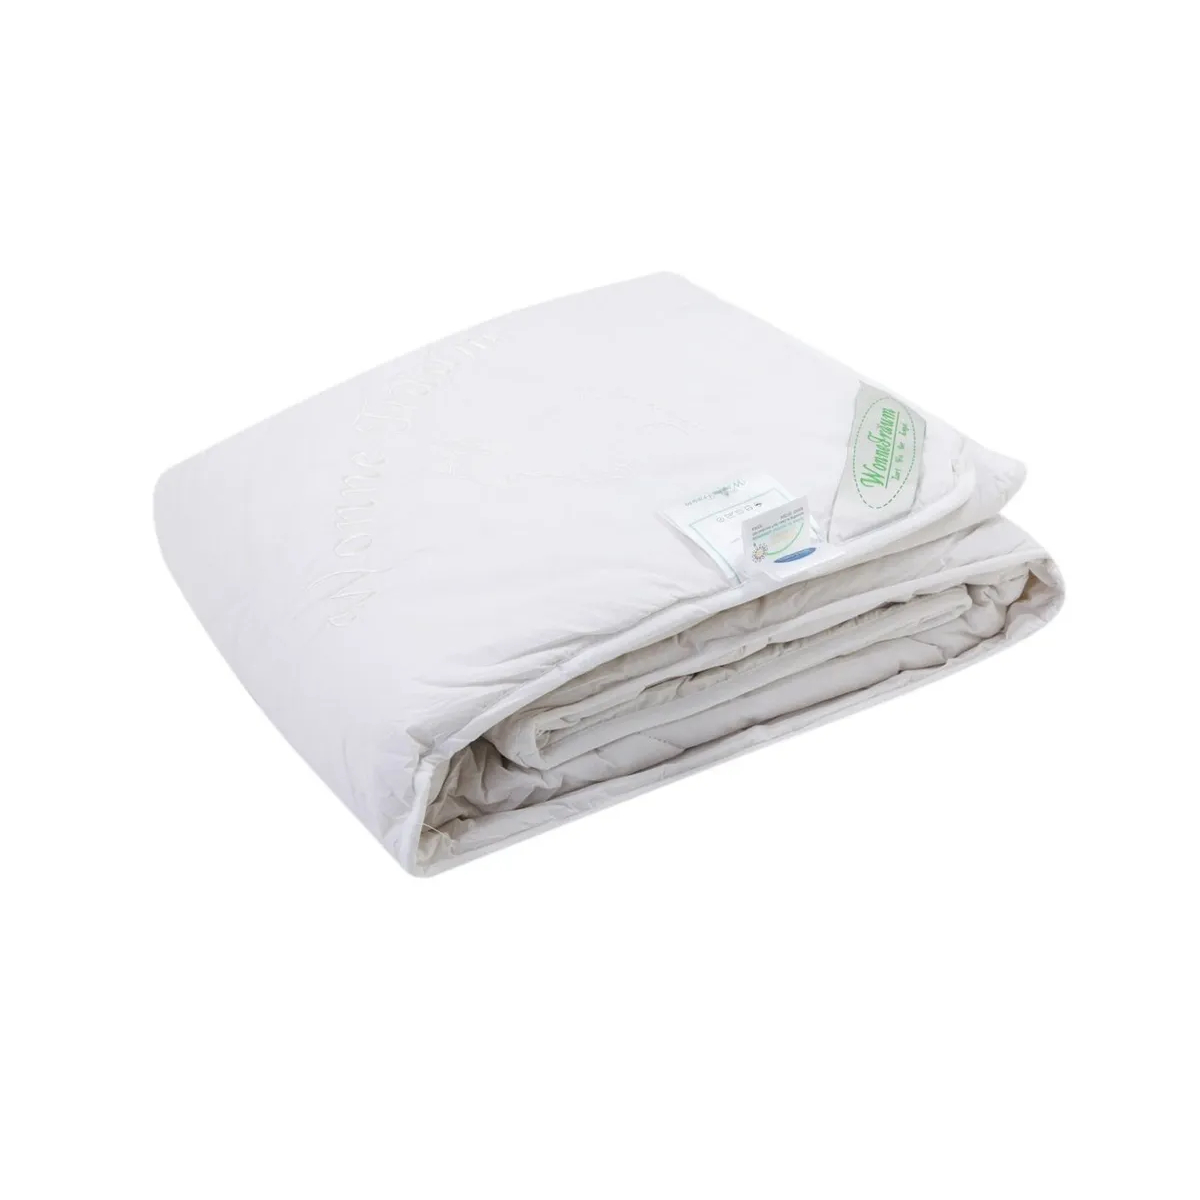 Где купить Одеяло шерстяное Wonne Traum белое 200х220 см (2709-26241) Wonne Traum 